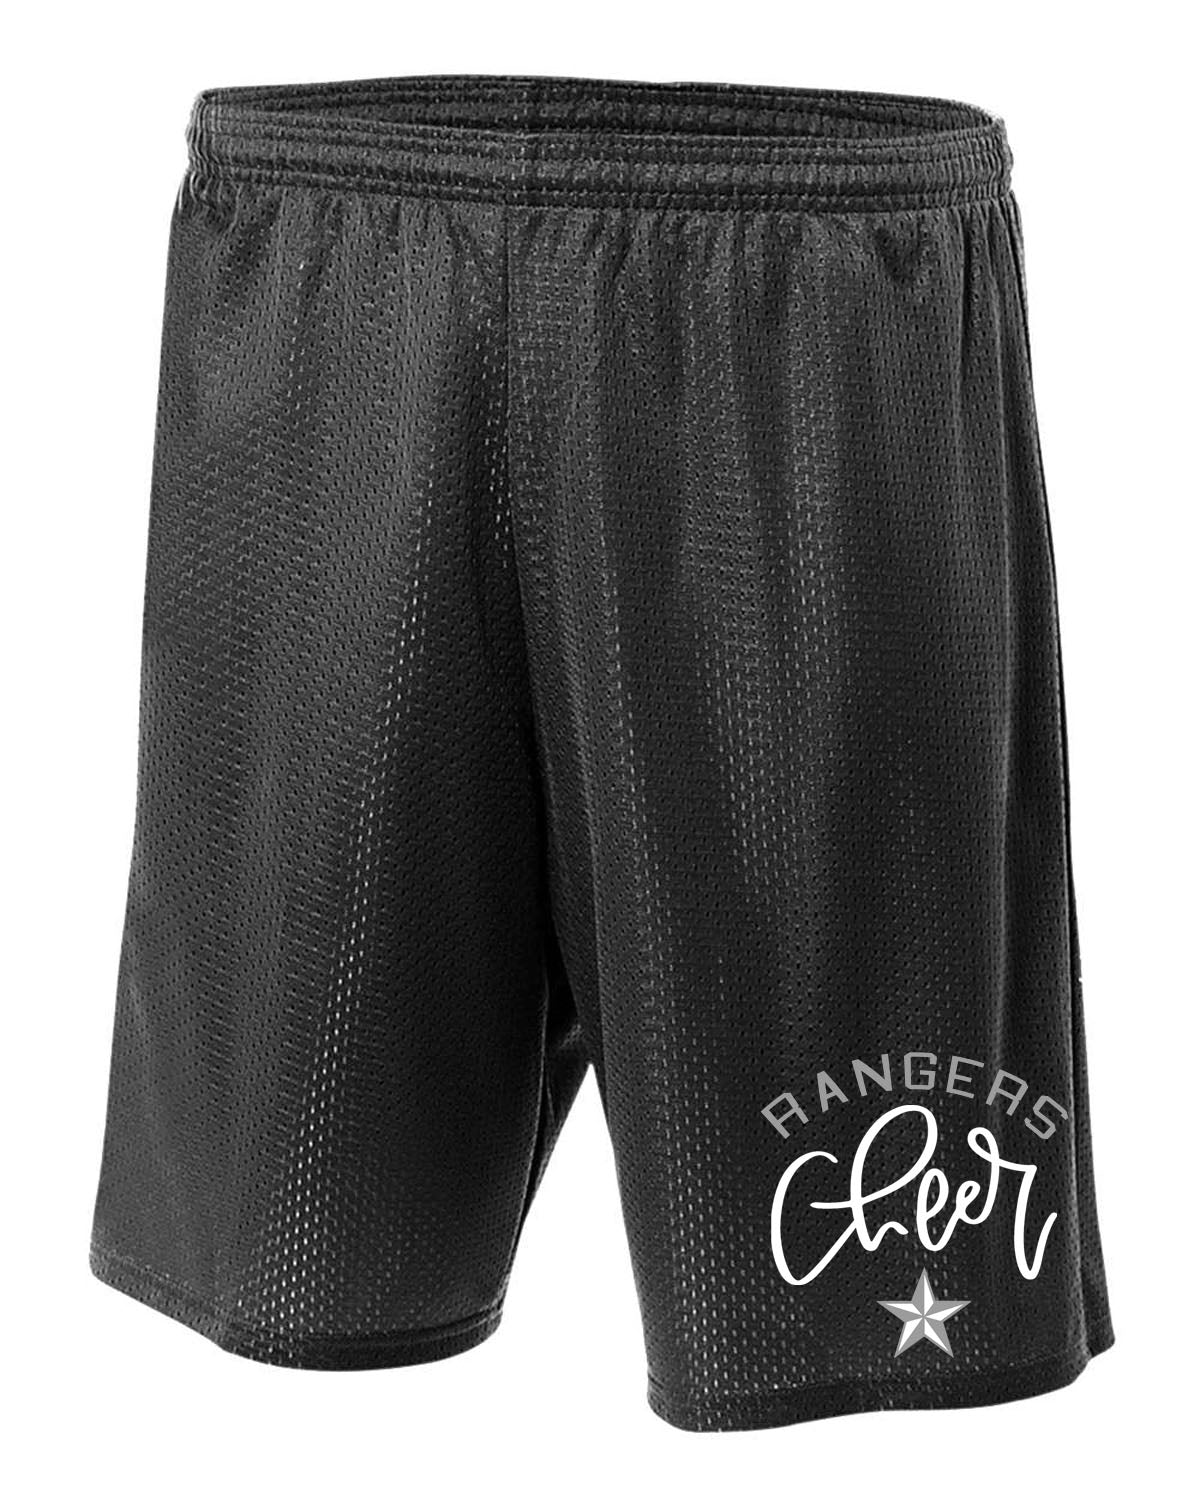 Wallkill Cheer Design 4 Mesh Shorts